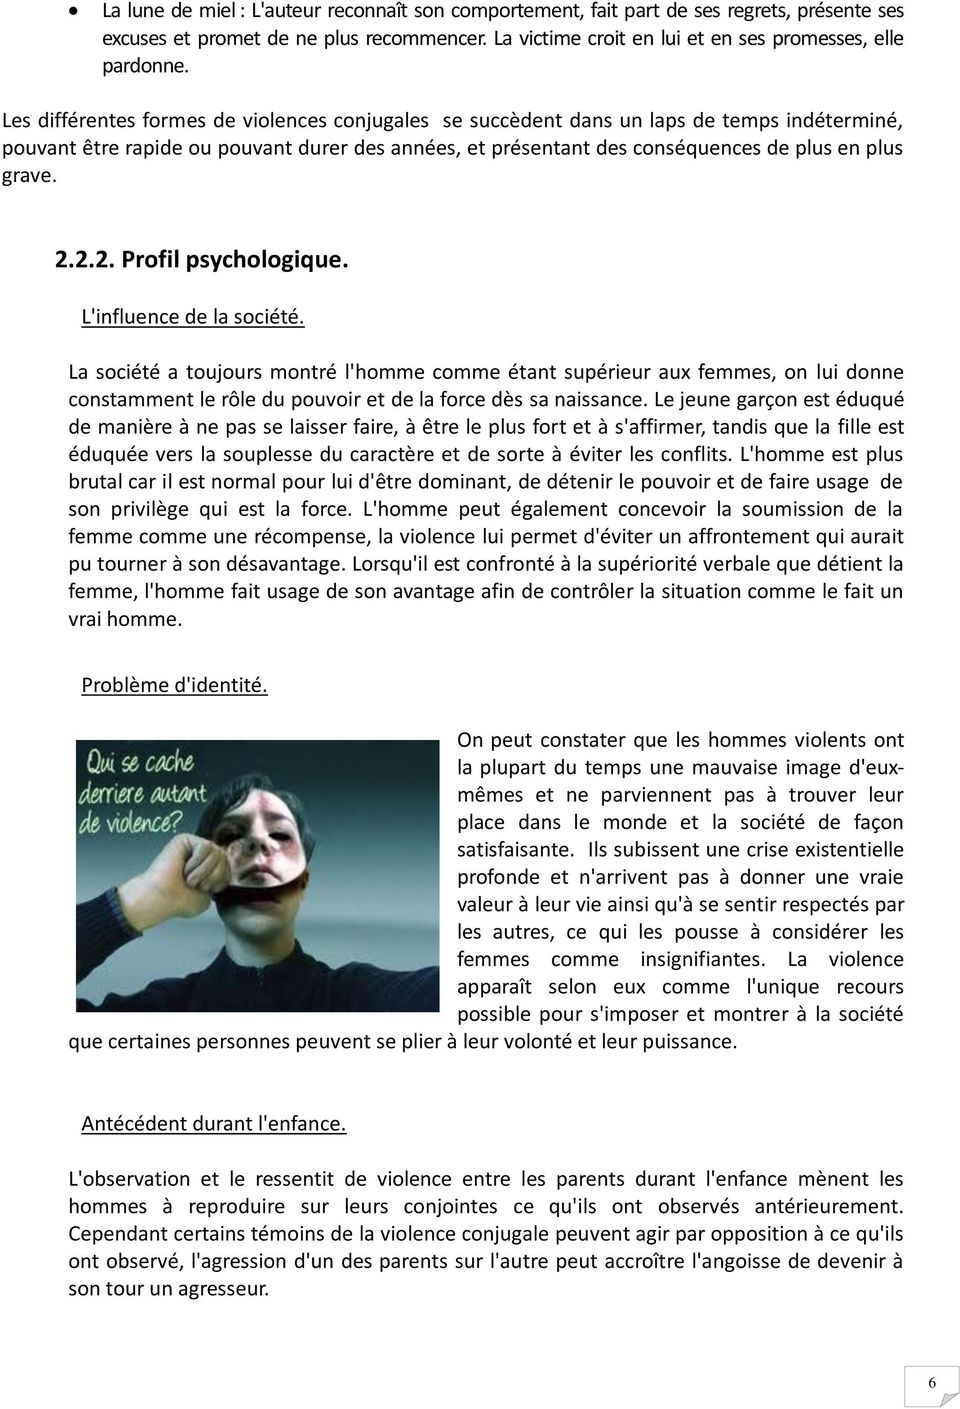 2.2. Profil psychologique. L'influence de la société.